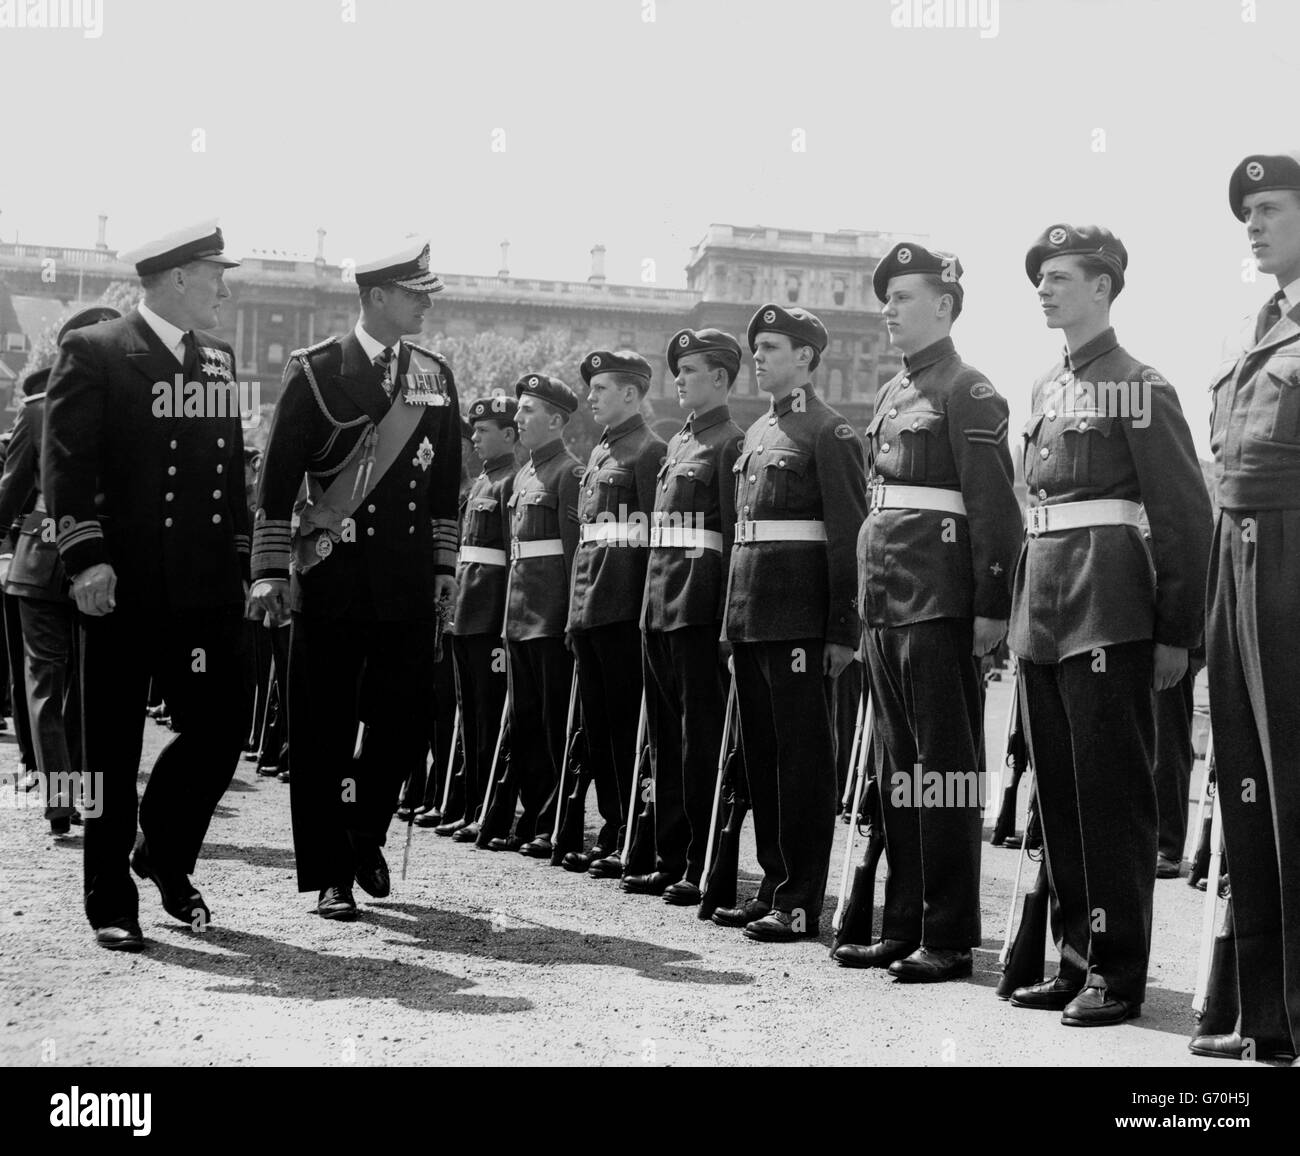 Le duc d'Édimbourg inspecte le contingent du corps d'entraînement aérien lors du défilé cérémonial du corps des cadets des trois Services sur la parade des gardes à cheval, Londres. Le défilé a été un préalable à l'entrée des cadets dans les Services. Banque D'Images